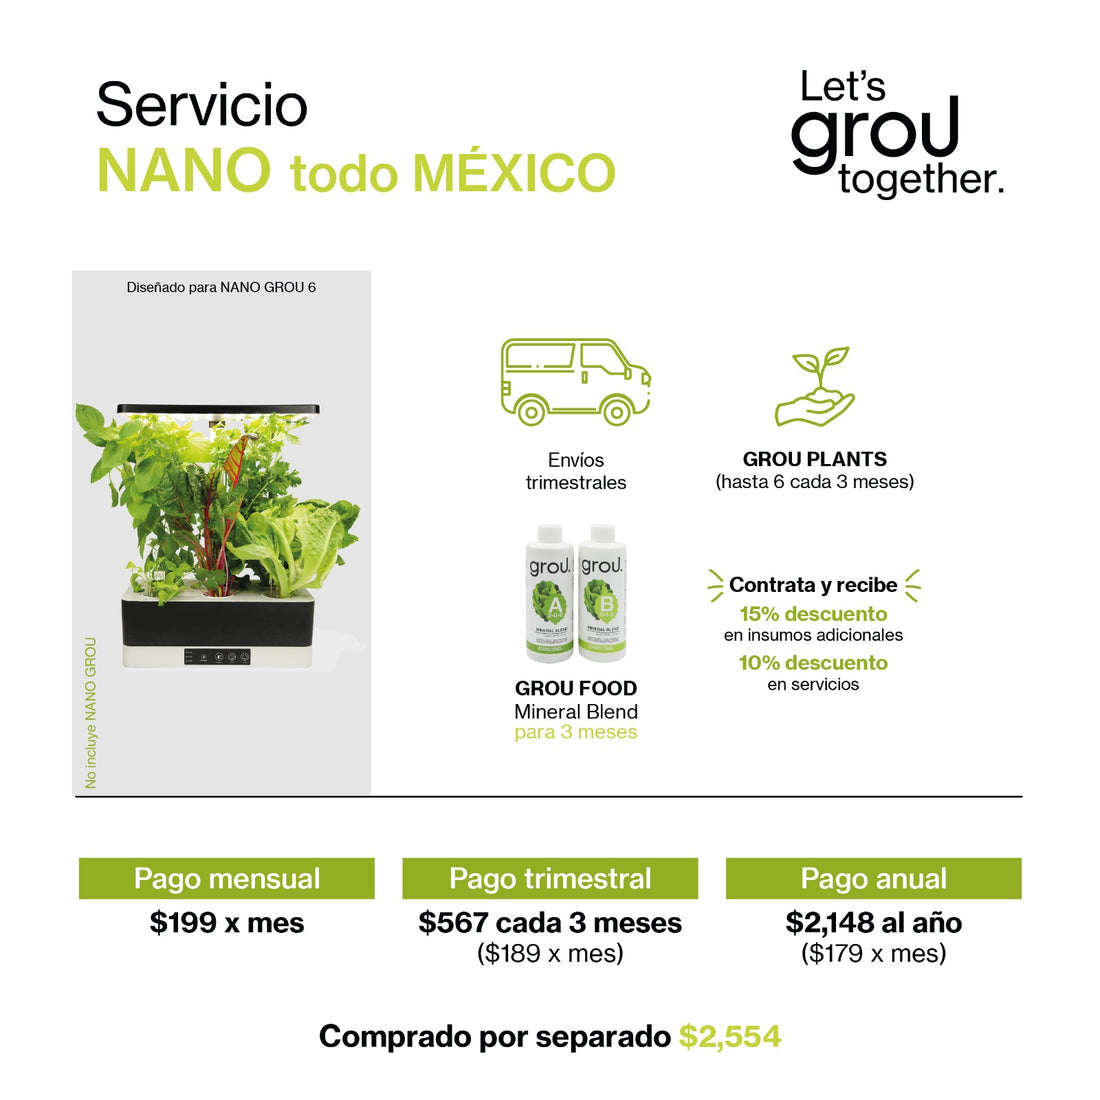 Servicio Nano (todo Mex)